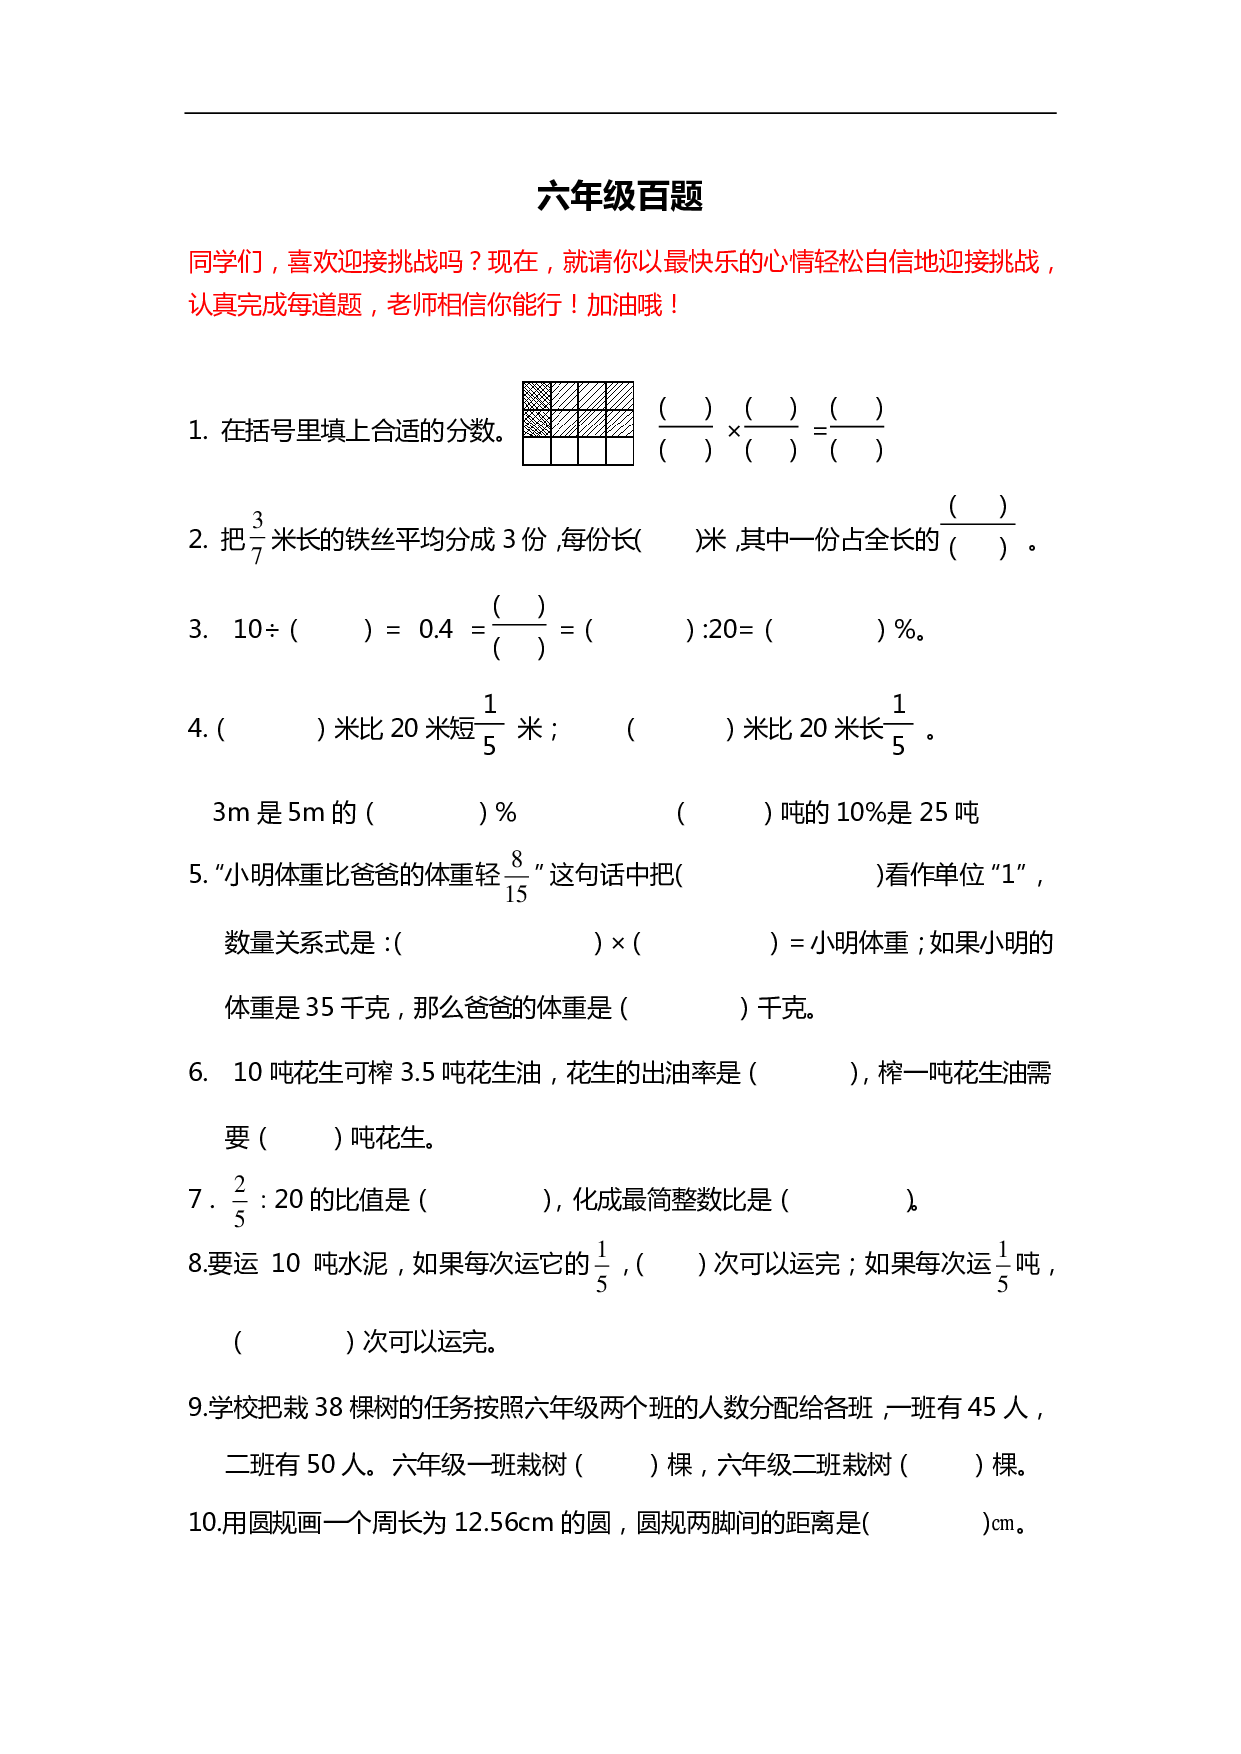 【人教版数学】六年级必练100题